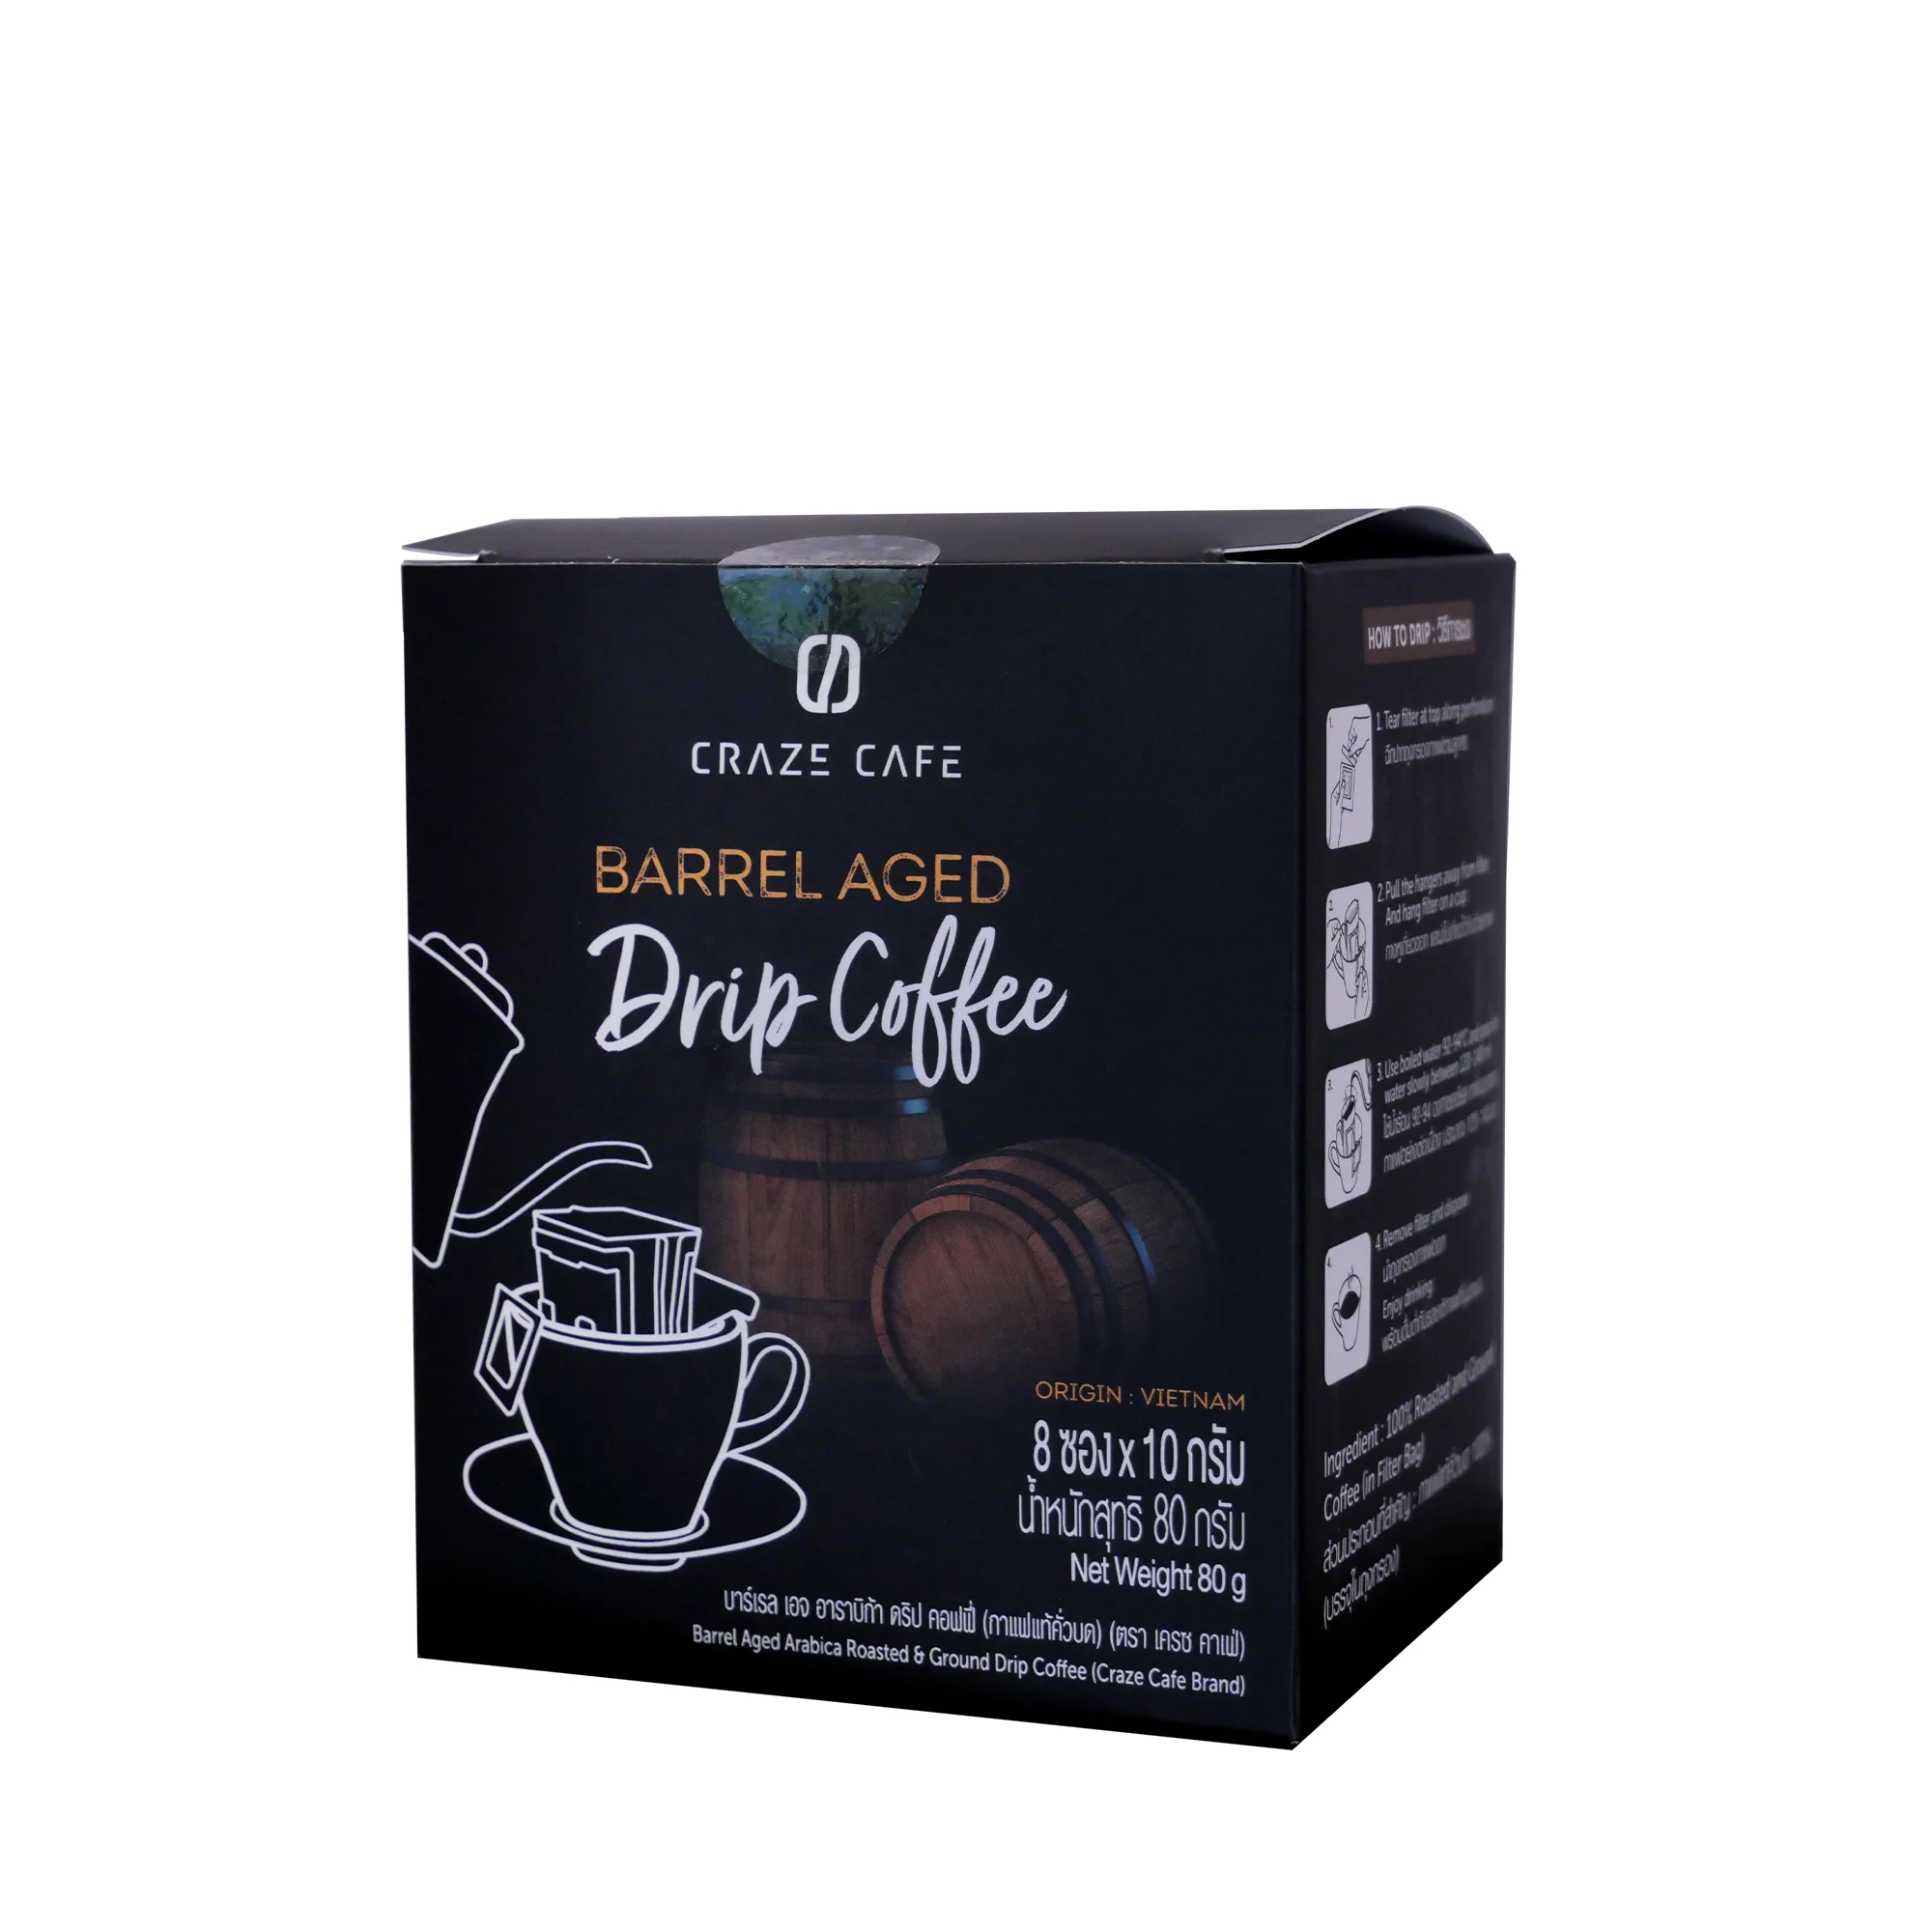 Barrel-Aged-Arabica-Drip-Coffee_2